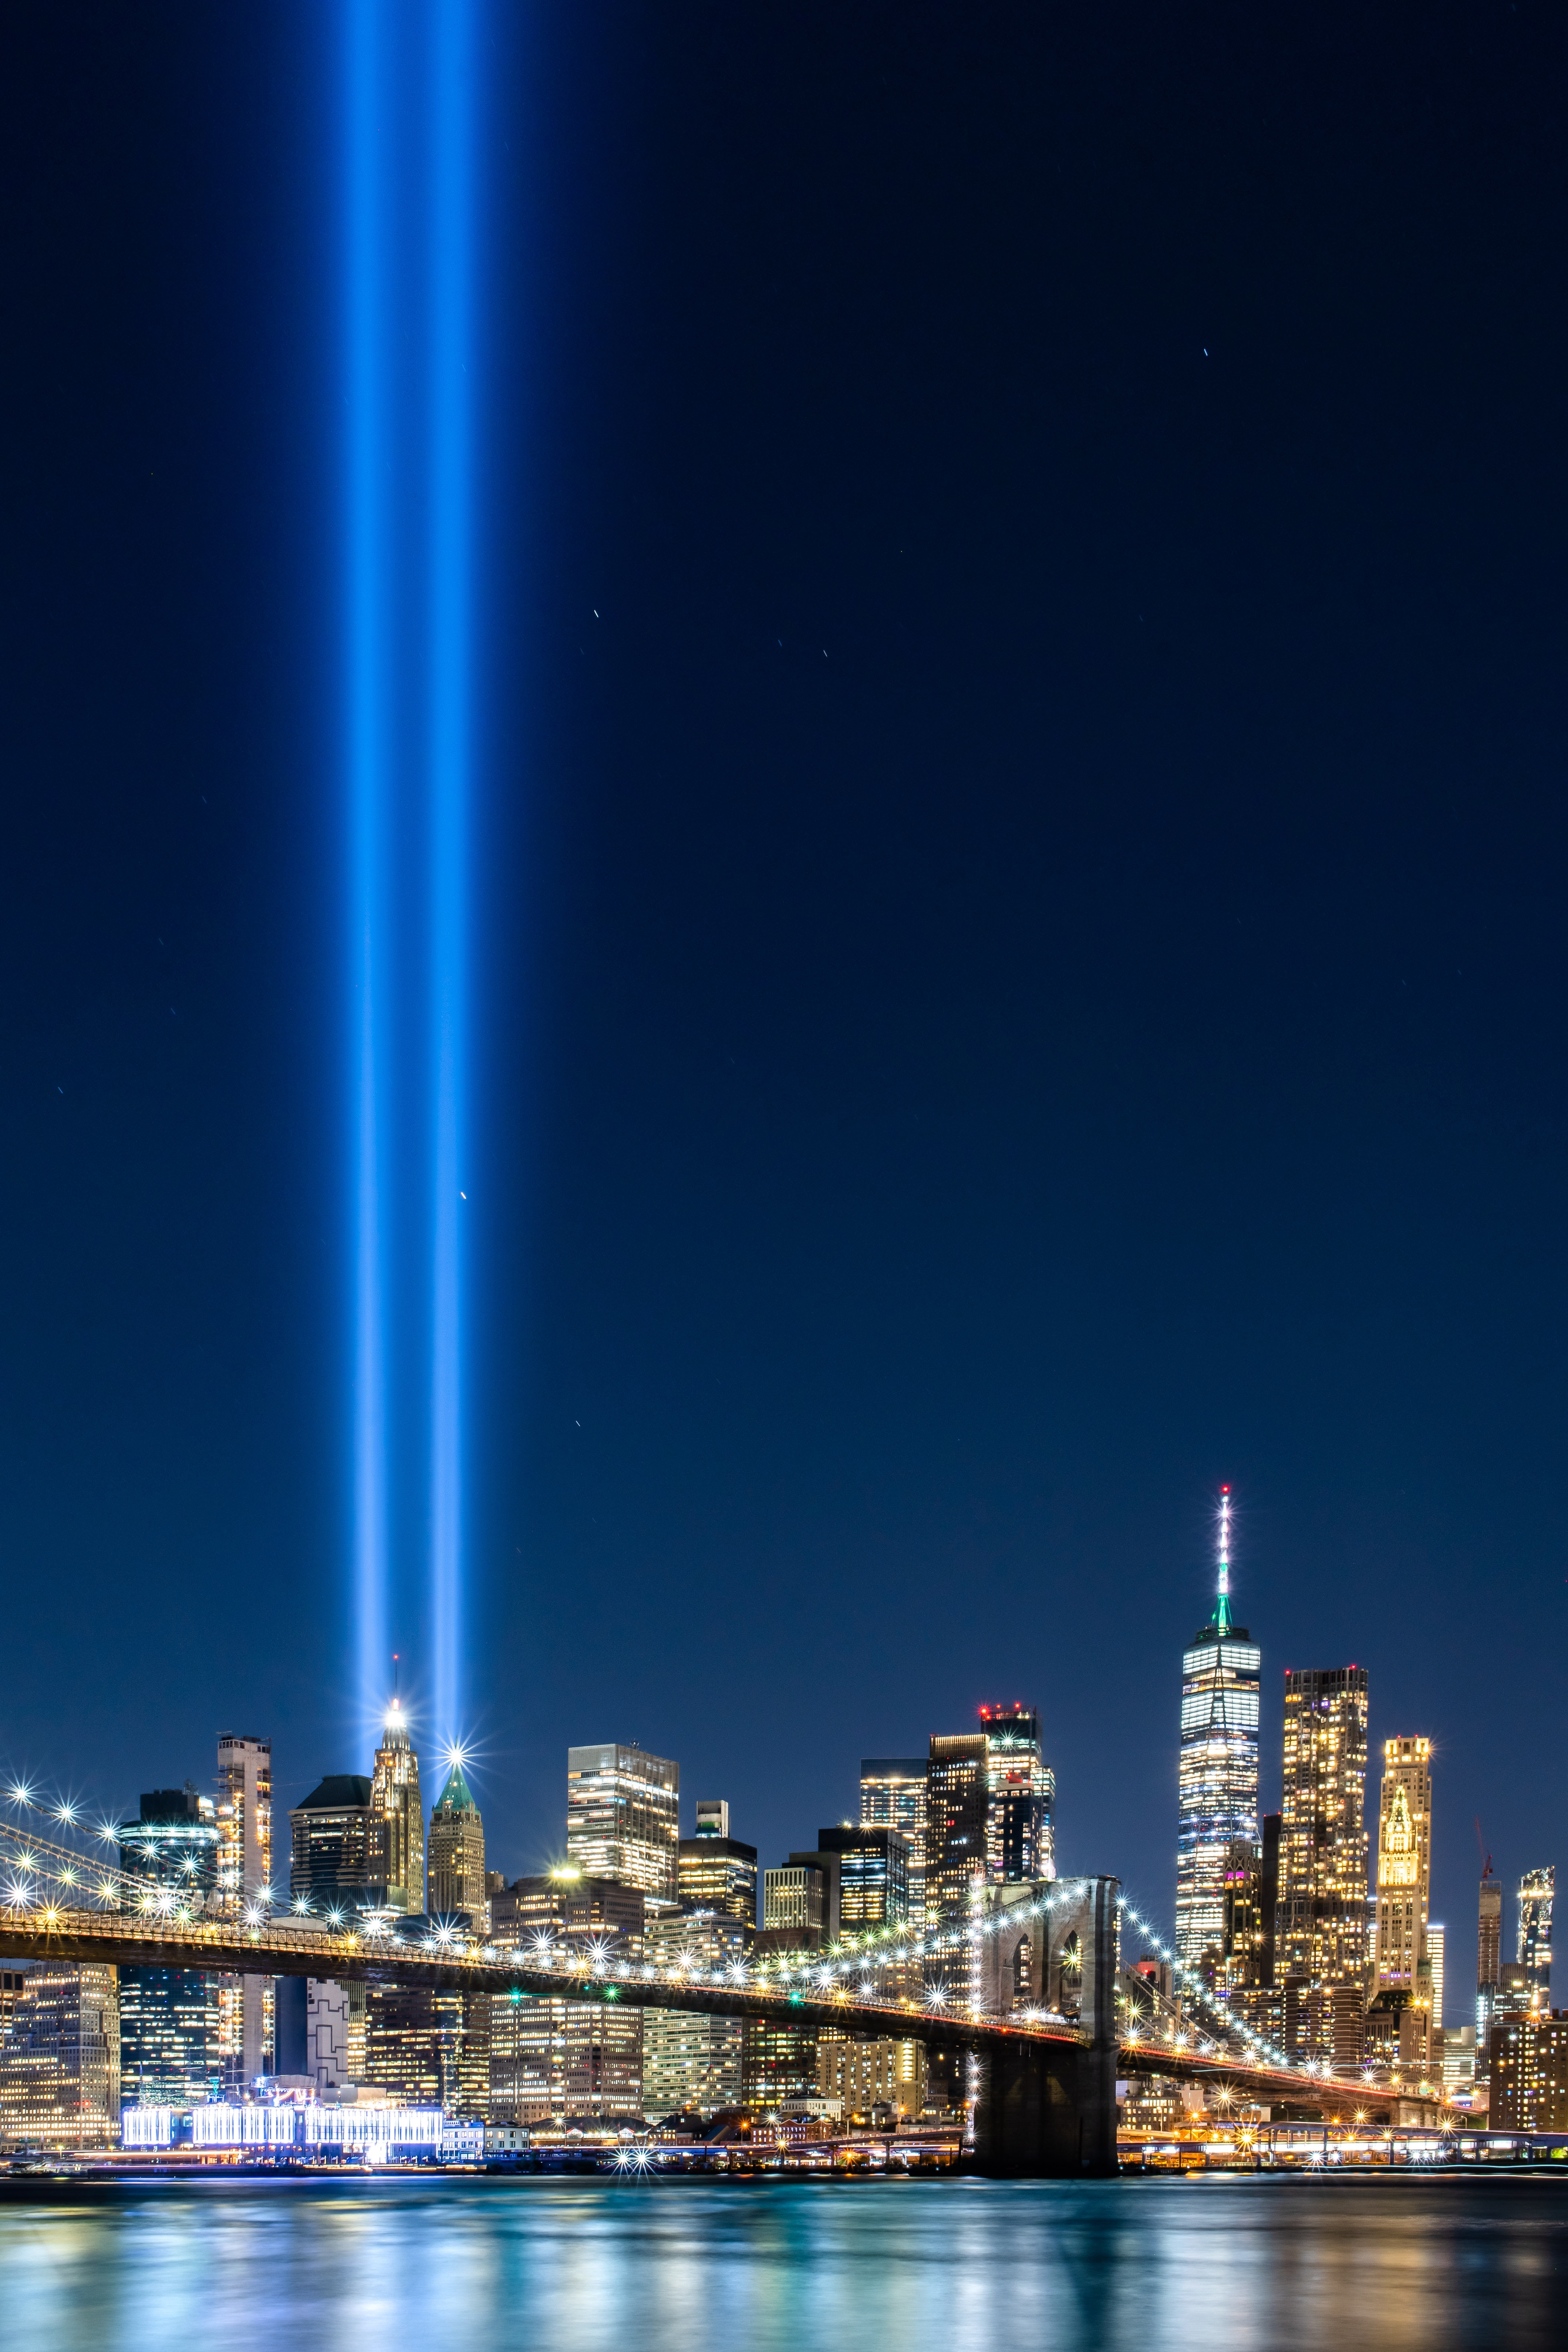 HD wallpaper, 5K, City Lights, Tribute In Light, Bridge, Cityscape, 911 Memorial, Night Time, Spotlight, September 11